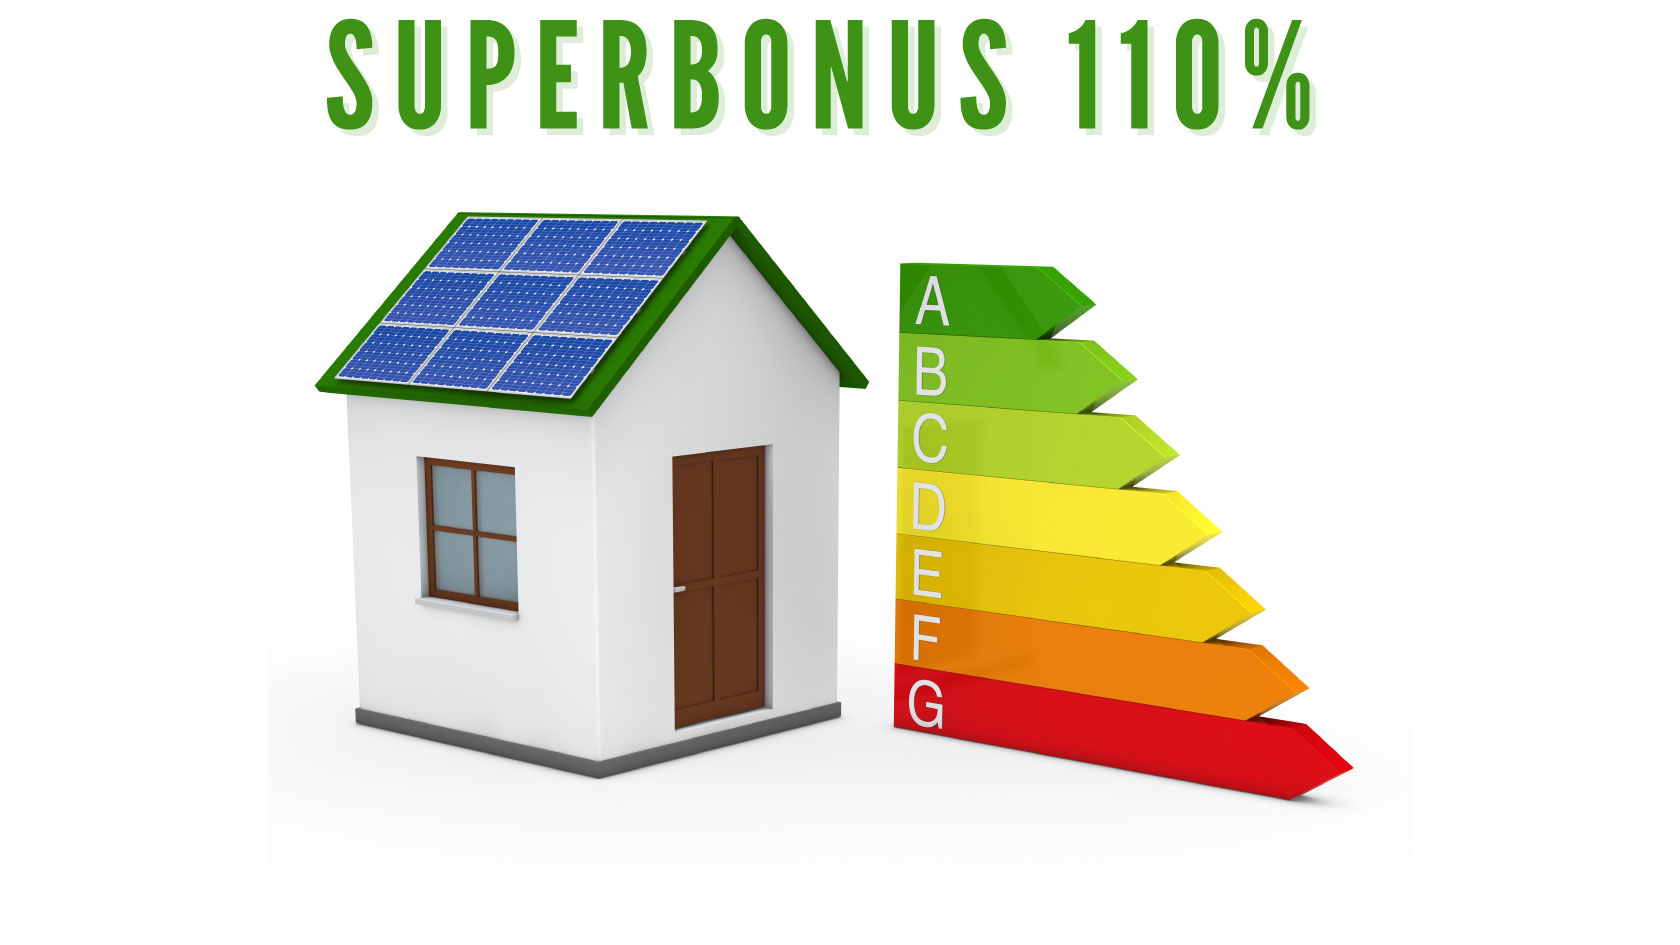 Superbonus 110%, Ecobonus, Sismabonus e ristrutturazioni edilizie